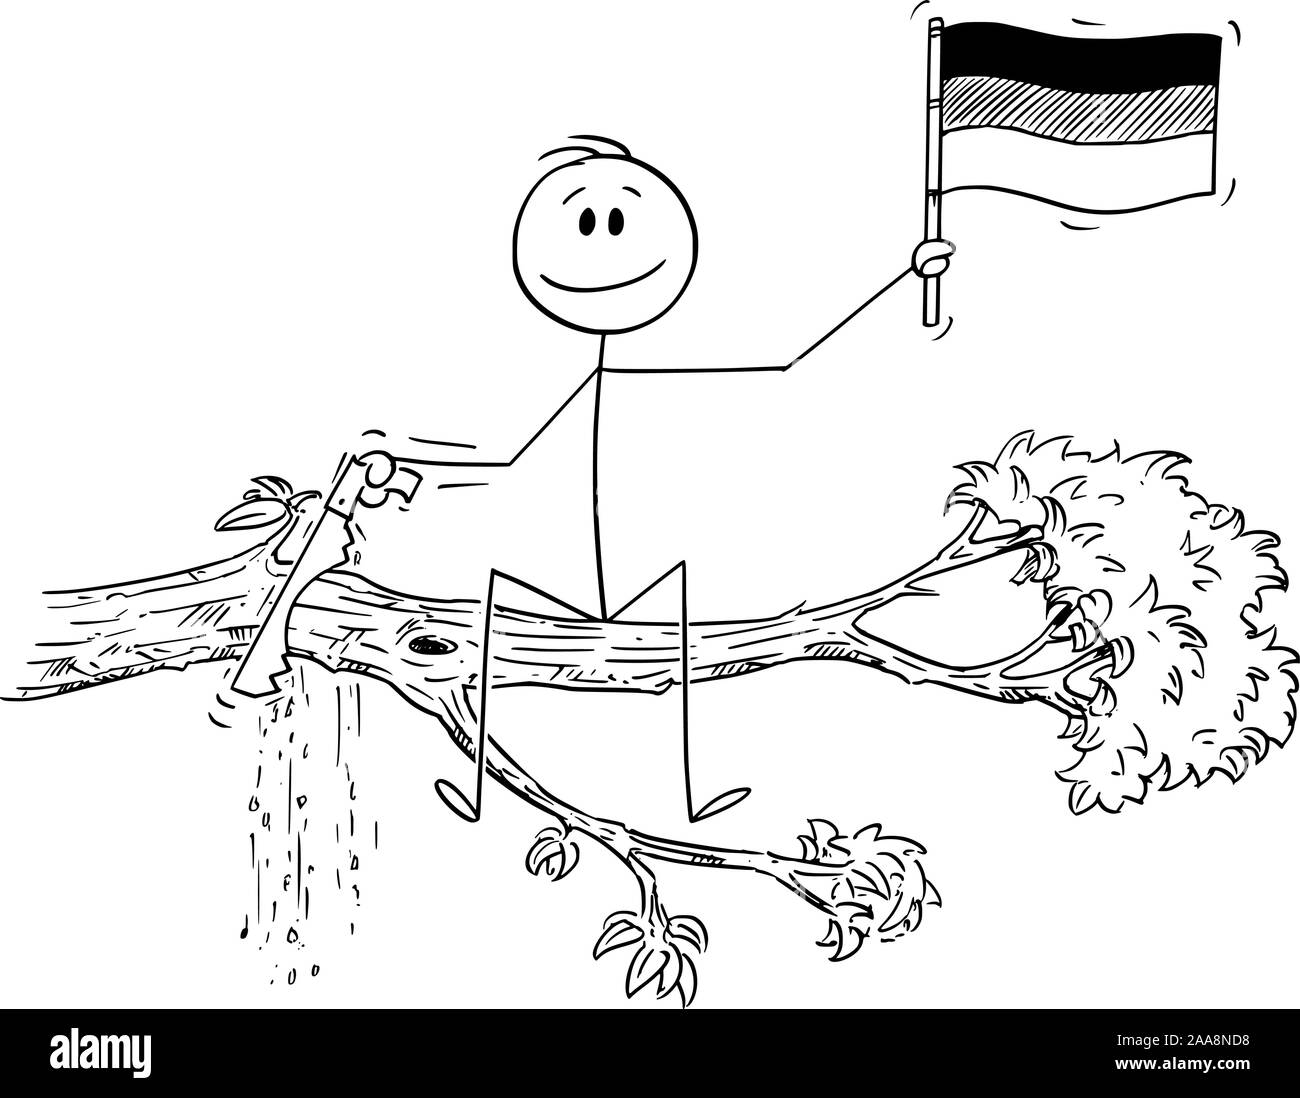 Vektor cartoon Strichmännchen Zeichnen konzeptionelle Darstellung der Mann mit der Flagge der Bundesrepublik Deutschland, und Schneiden mit sah den Ast ab, auf dem er sitzt. Stock Vektor